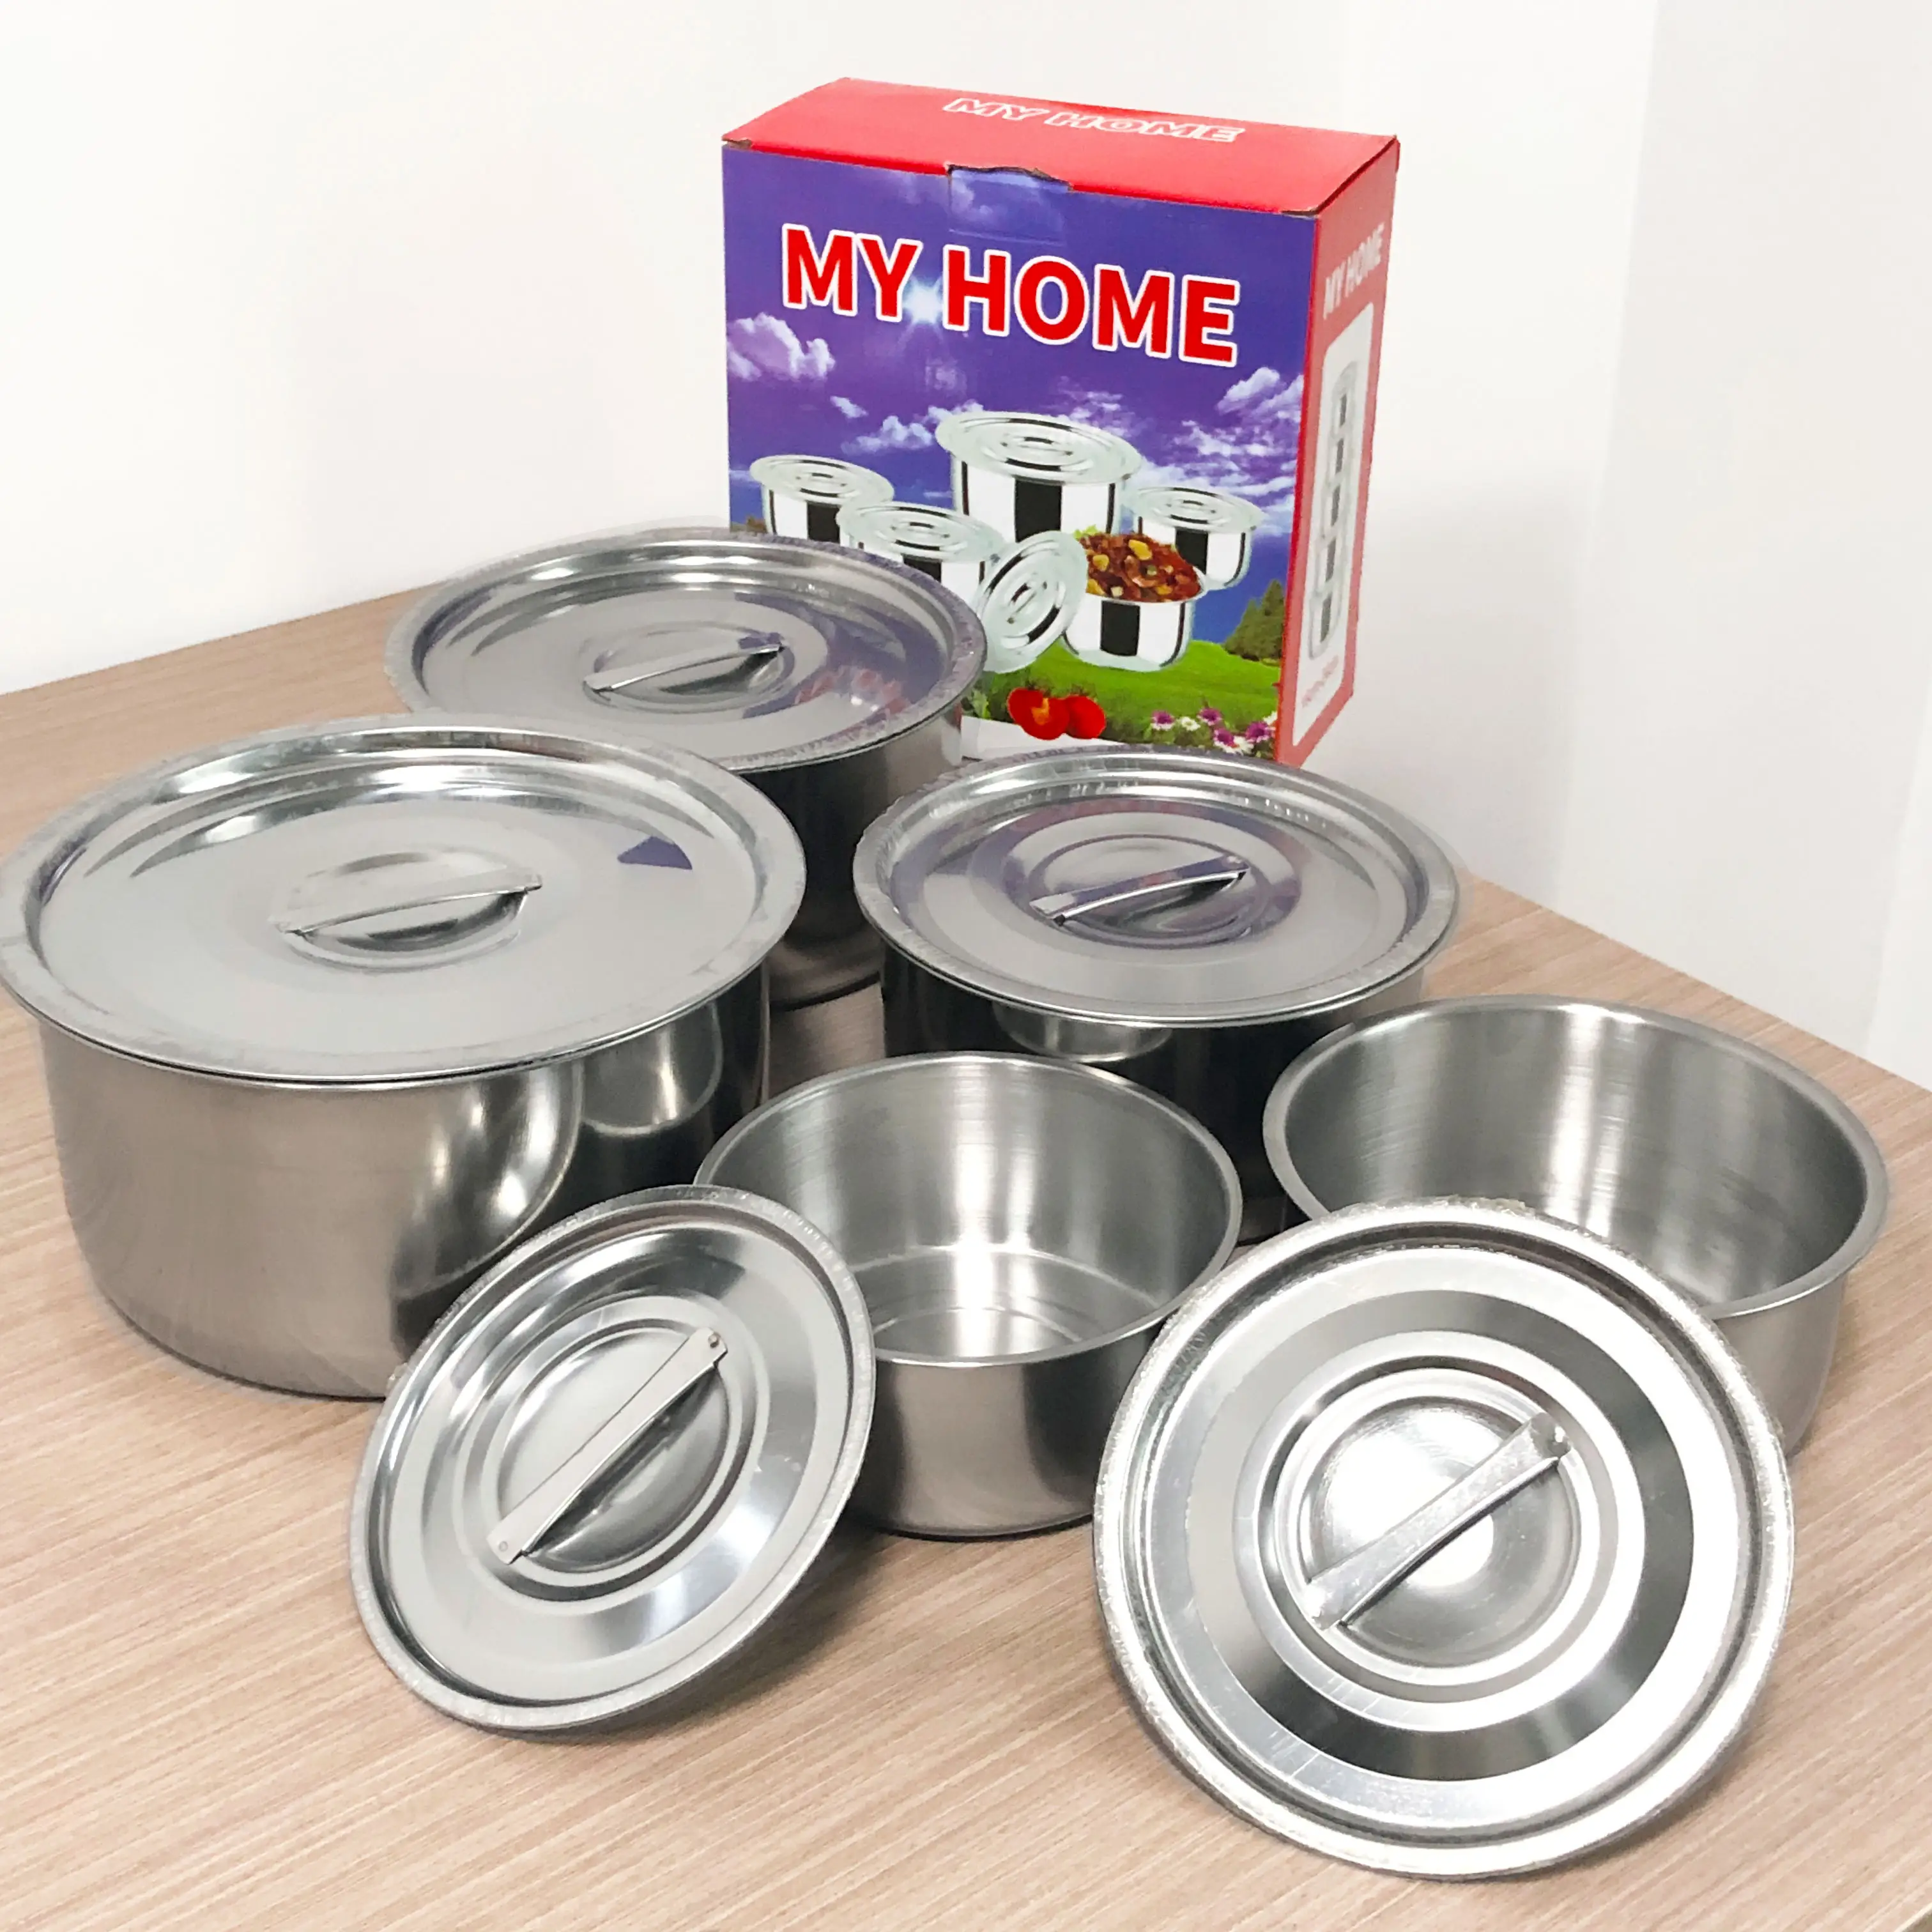 安い5個スープ鍋ボウル調理鍋キャセロール台所用品食品貯蔵容器ステンレス鋼調理器具セット